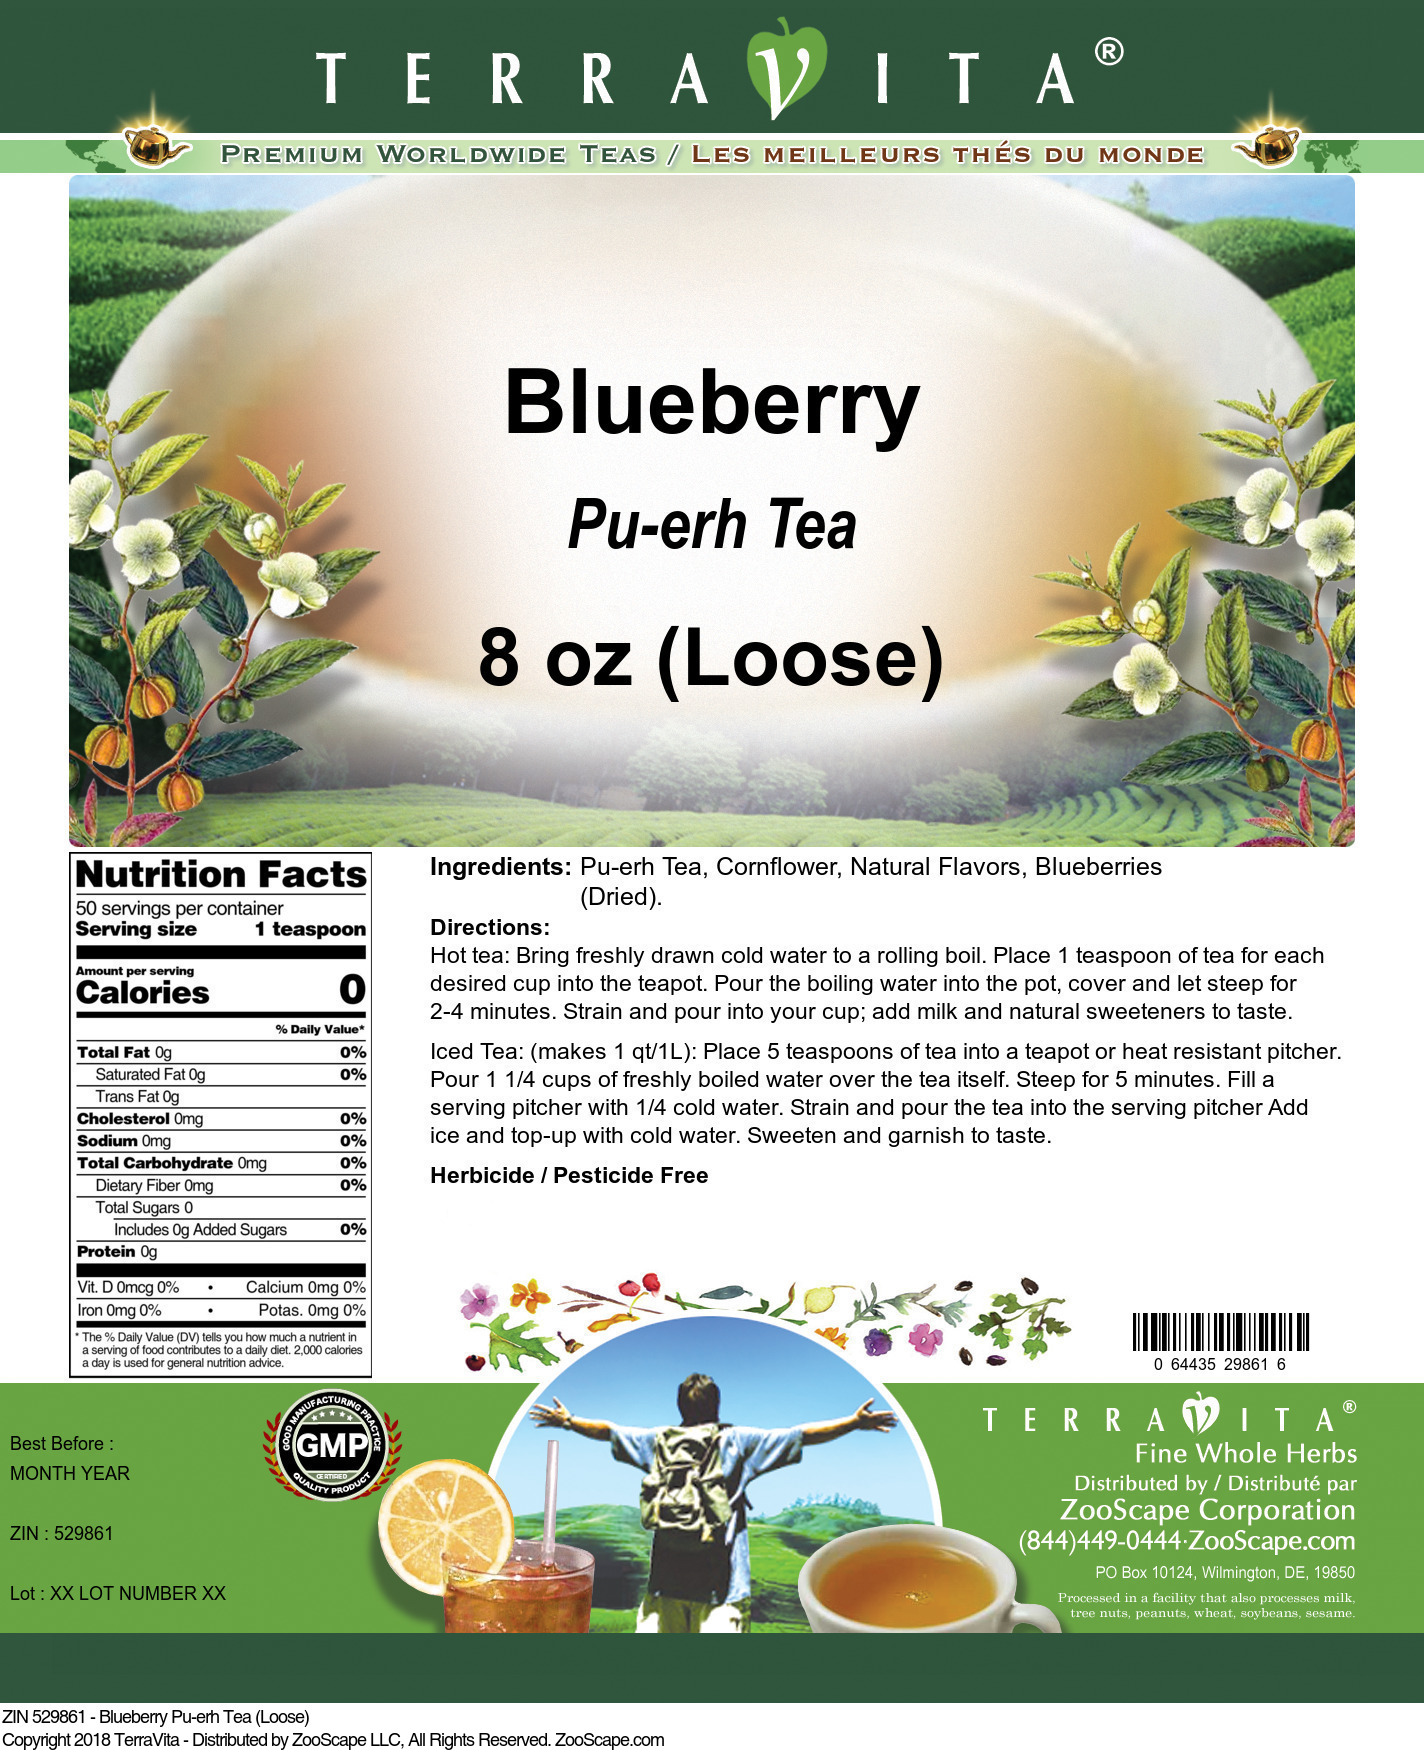 Blueberry Pu-erh Tea (Loose) - Label